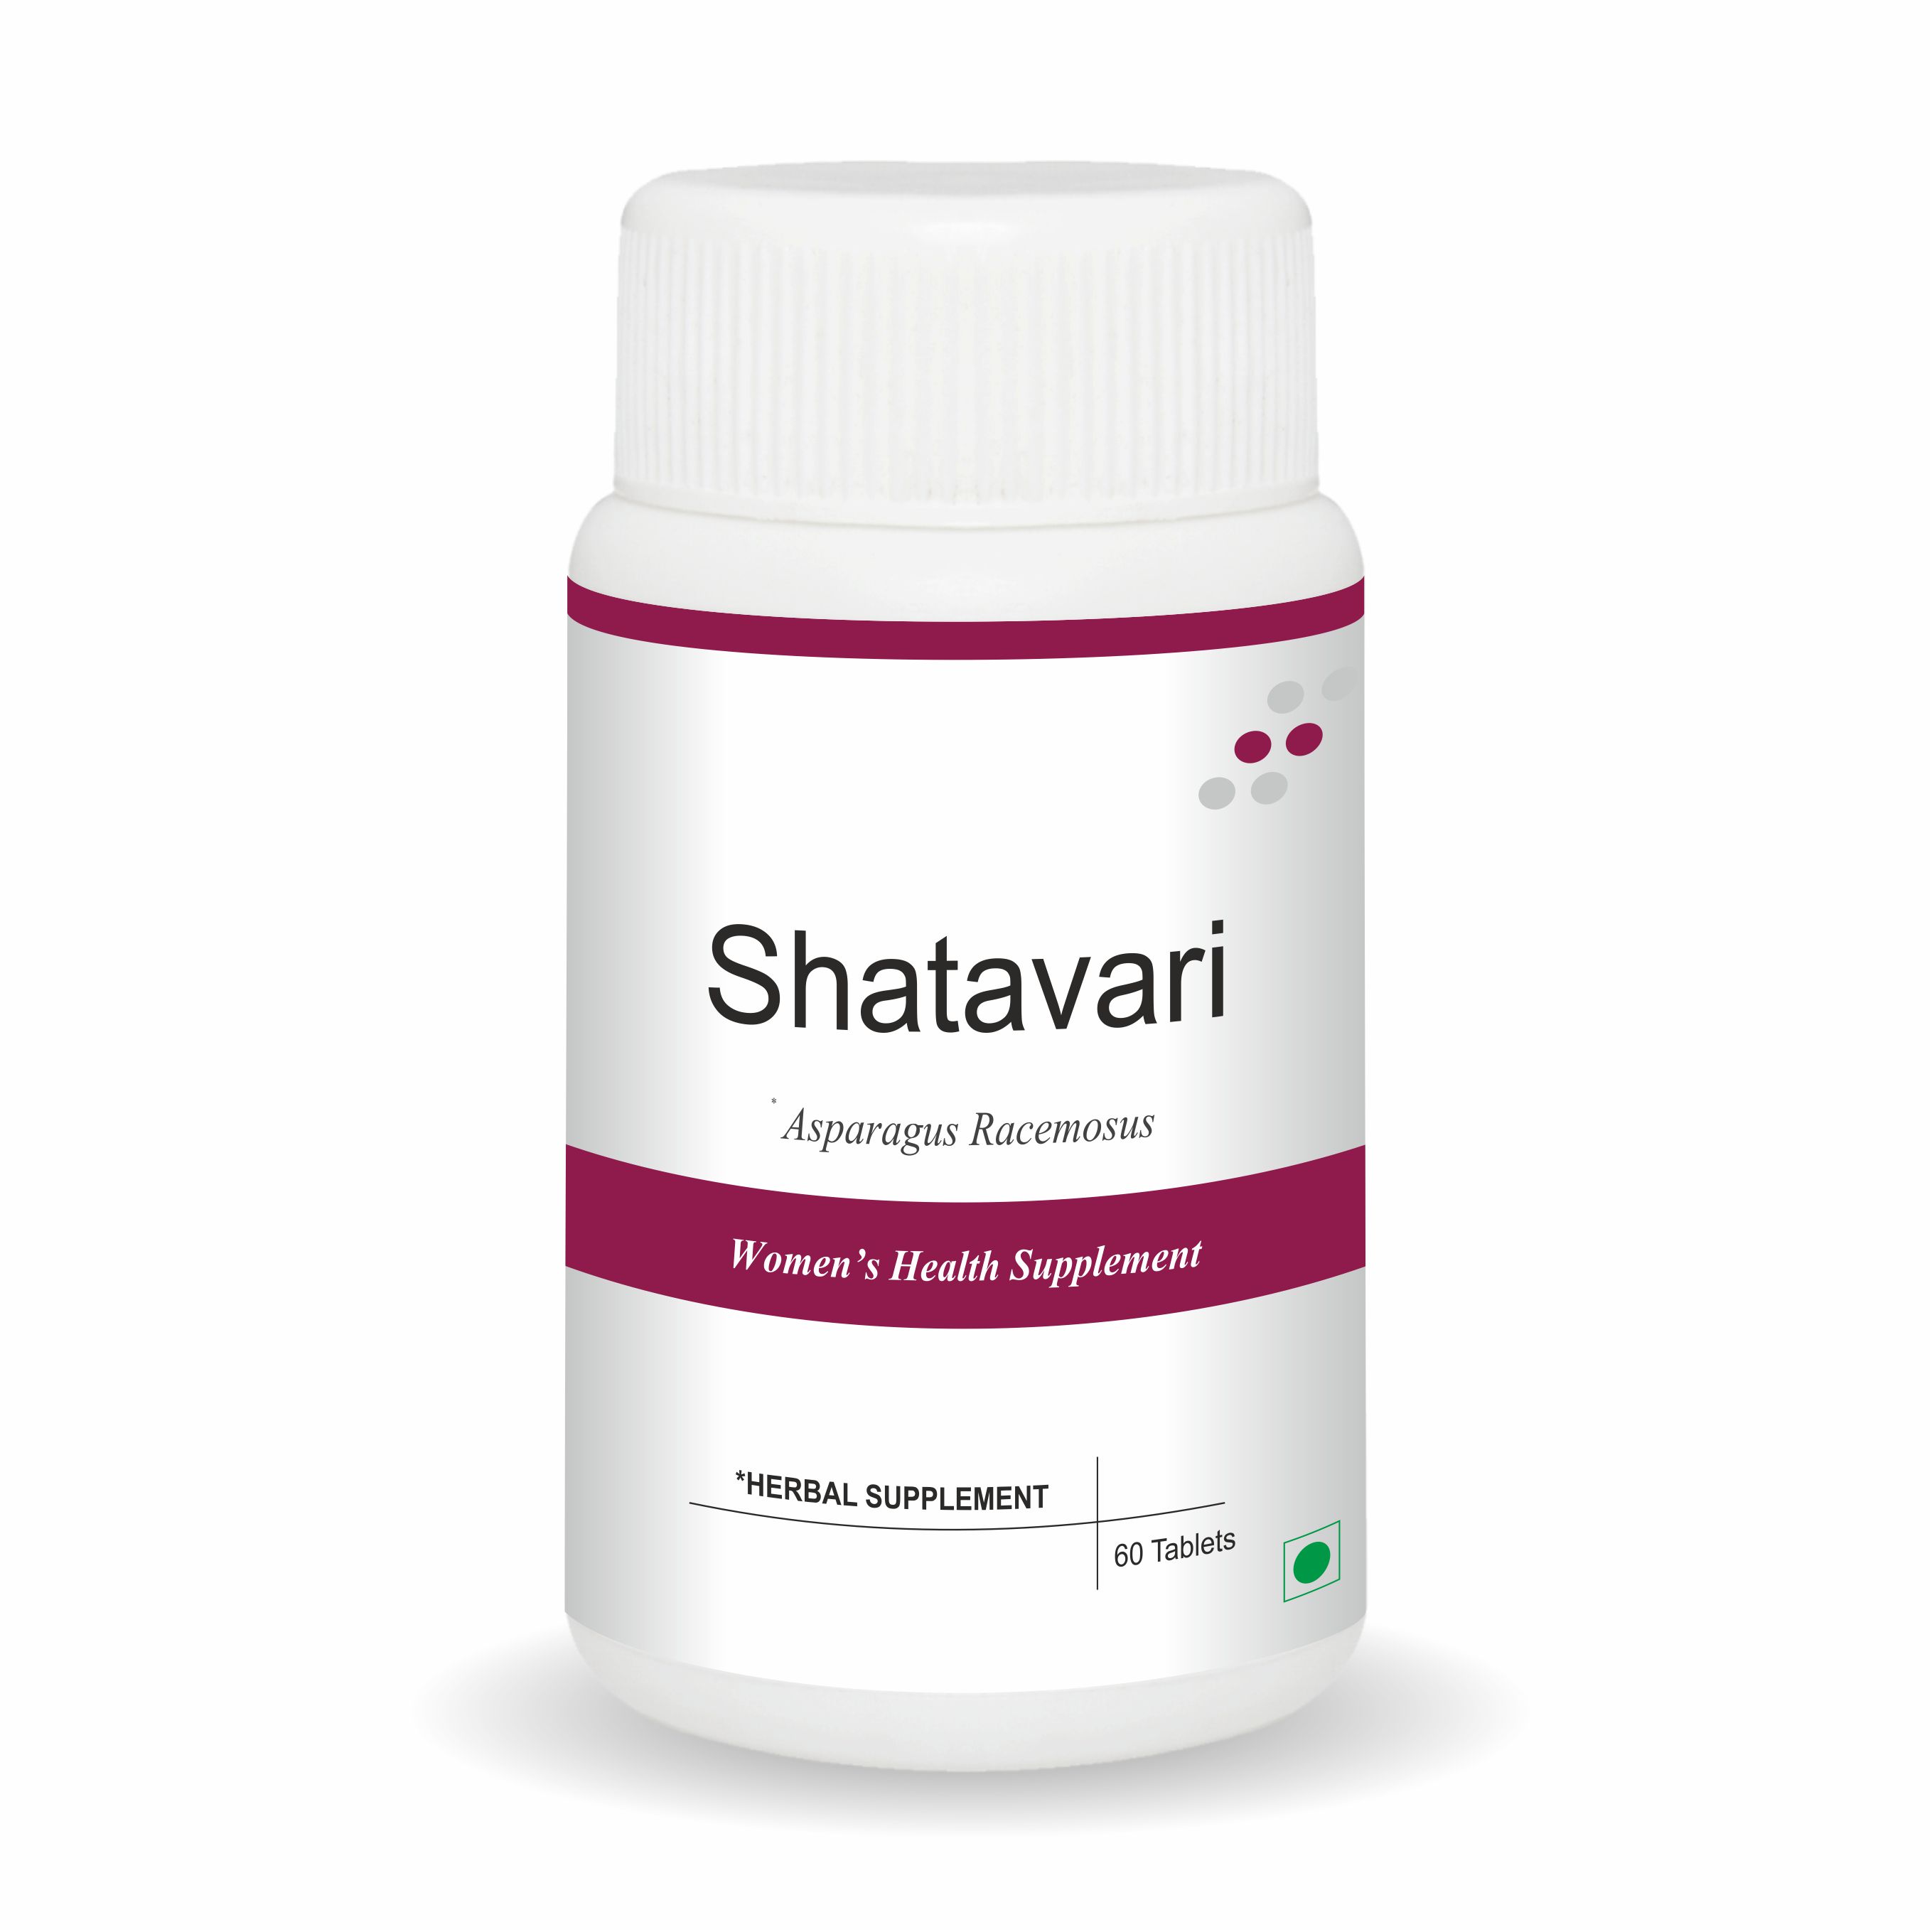 Shatavari Tablet 250 mg